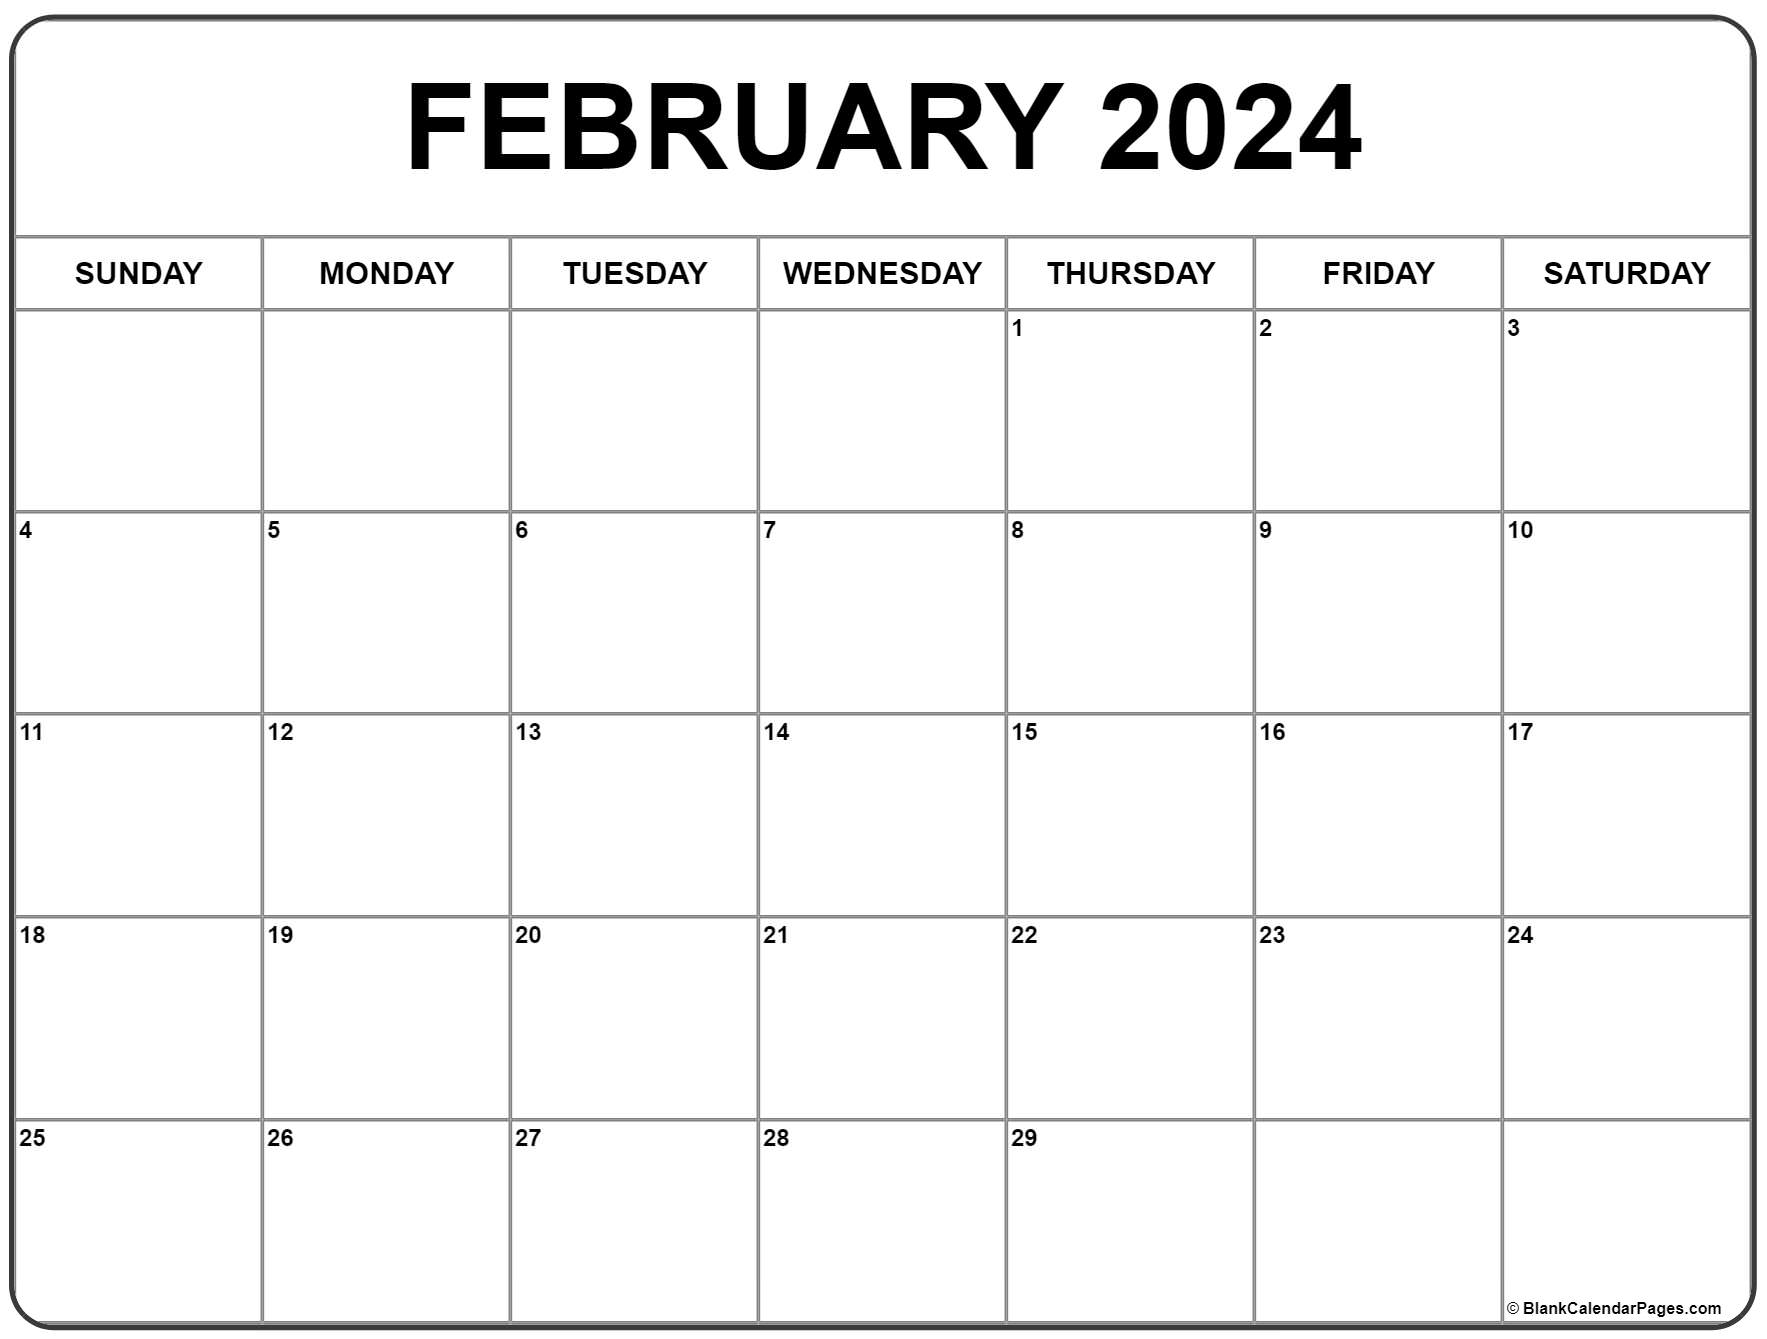 February 2024 Calendar | Free Printable Calendar for Feb 2024 Free Printable Calendar